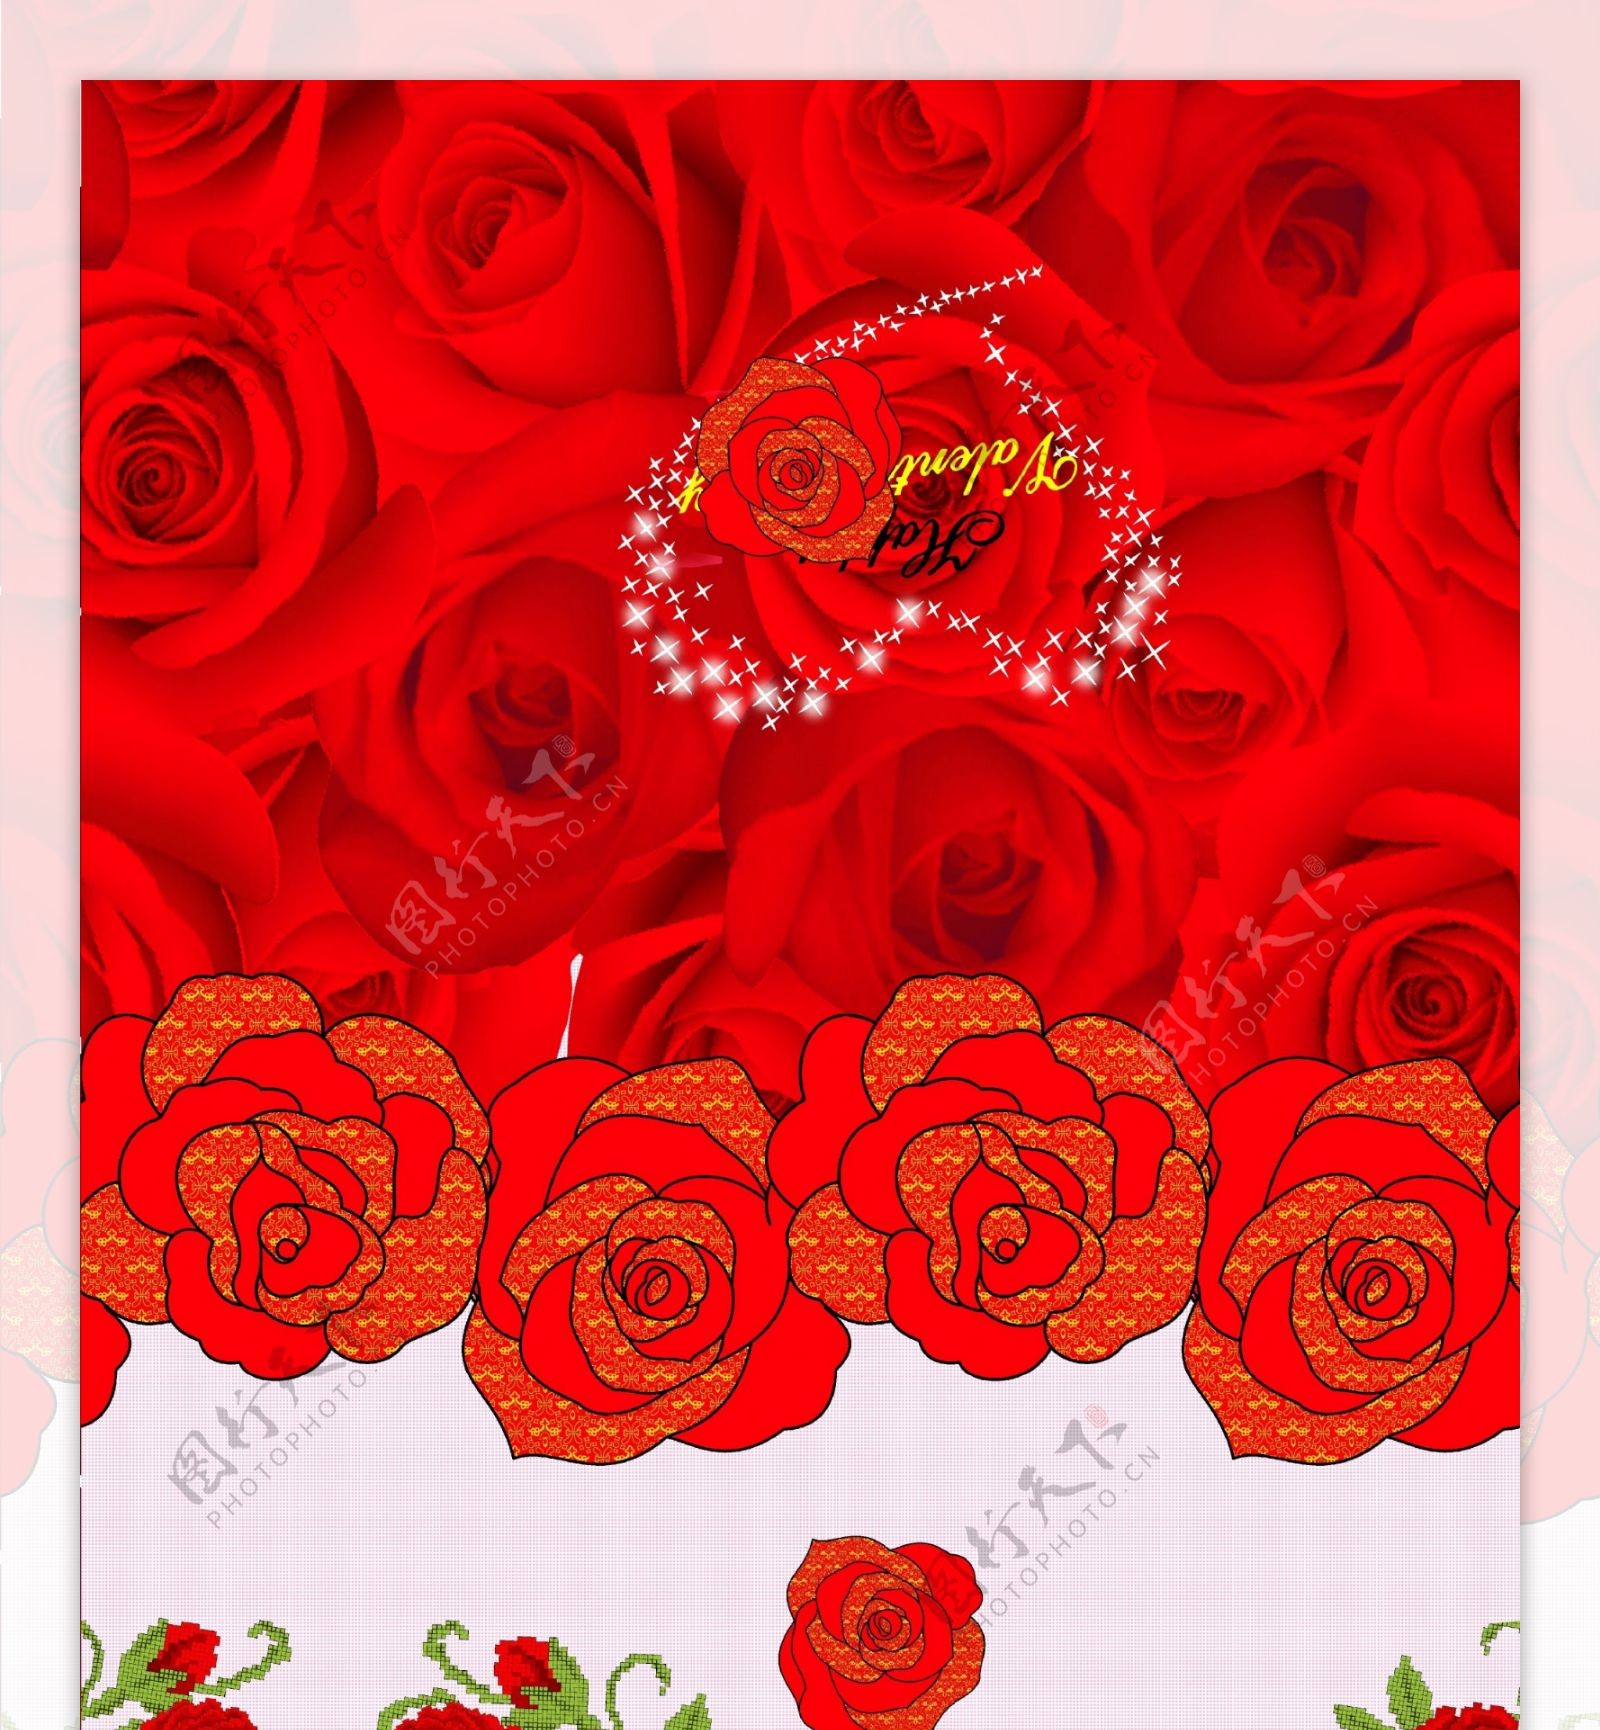 爱心玫瑰为主题的印花设计稿